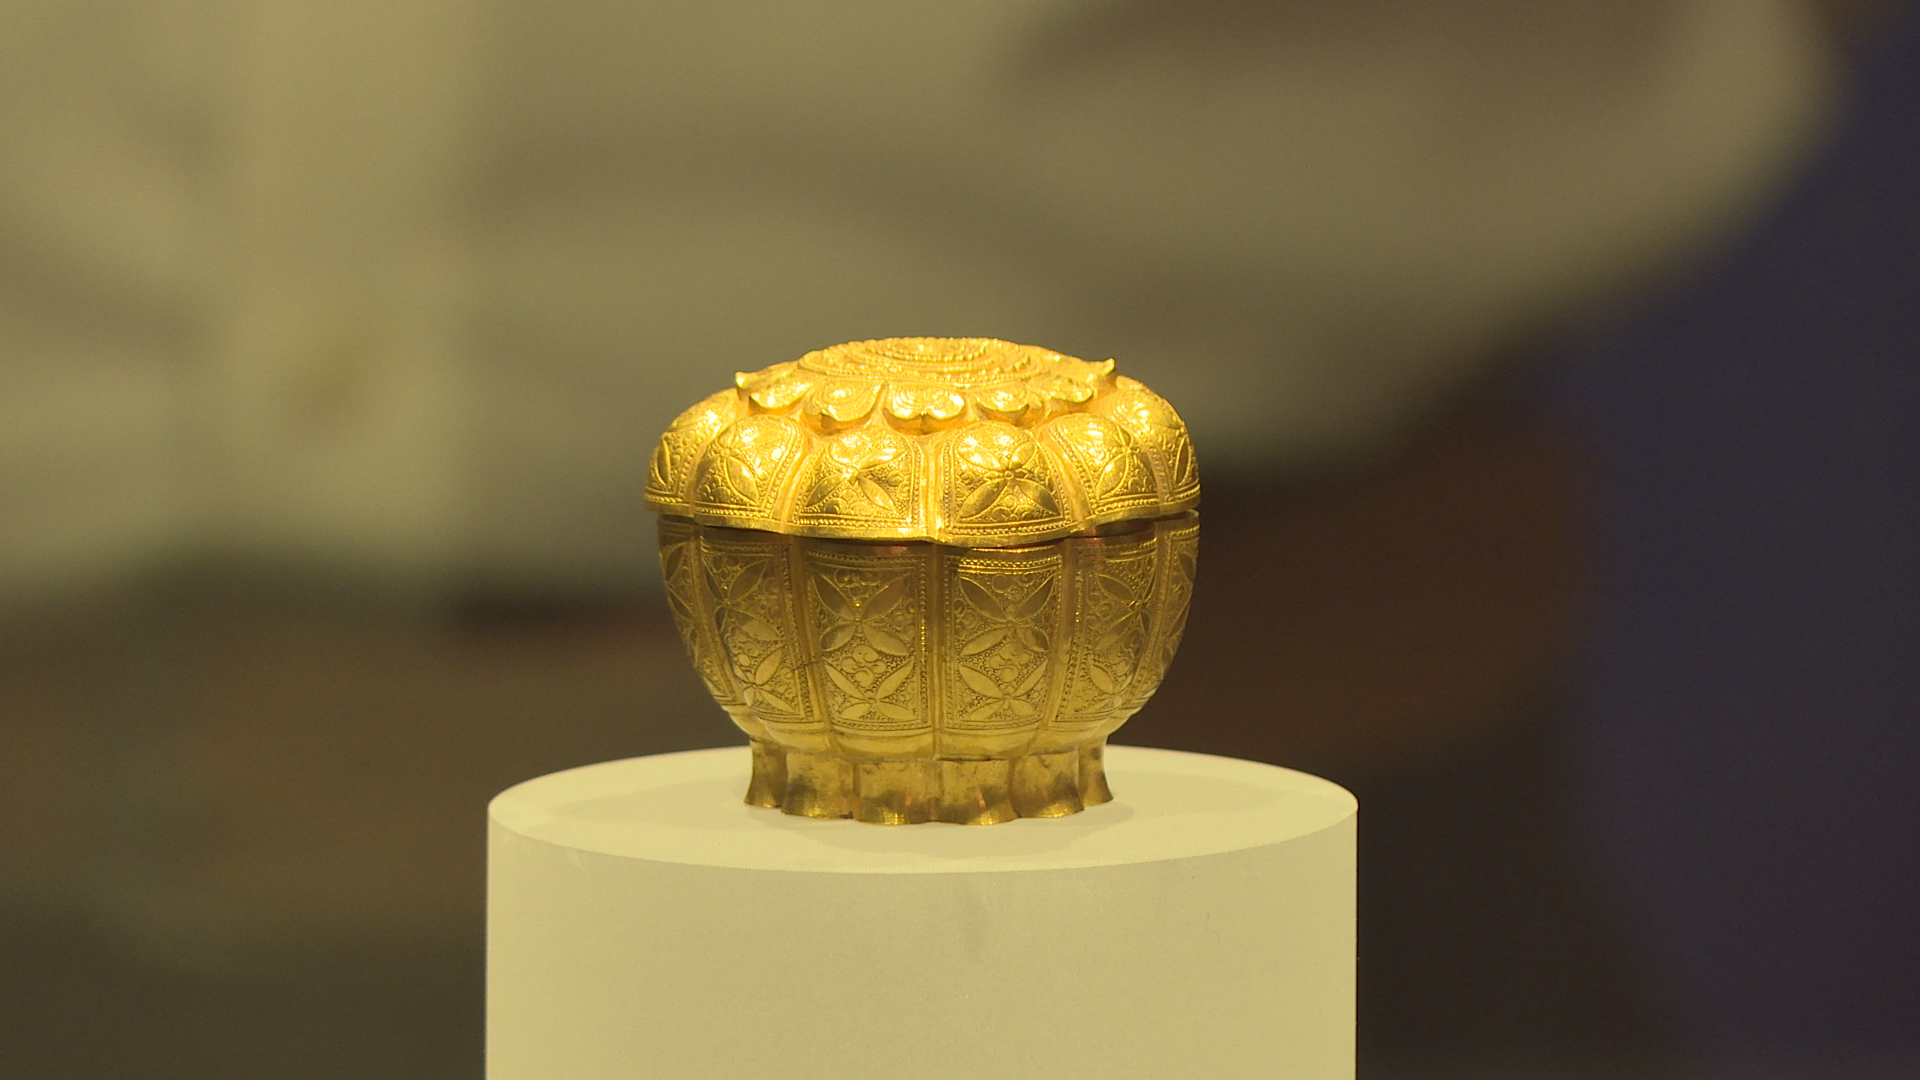 Bảo vật Hộp vàng Ngọa Vân - Yên Tử được trưng bày tại bảo tàng Quảng Ninh